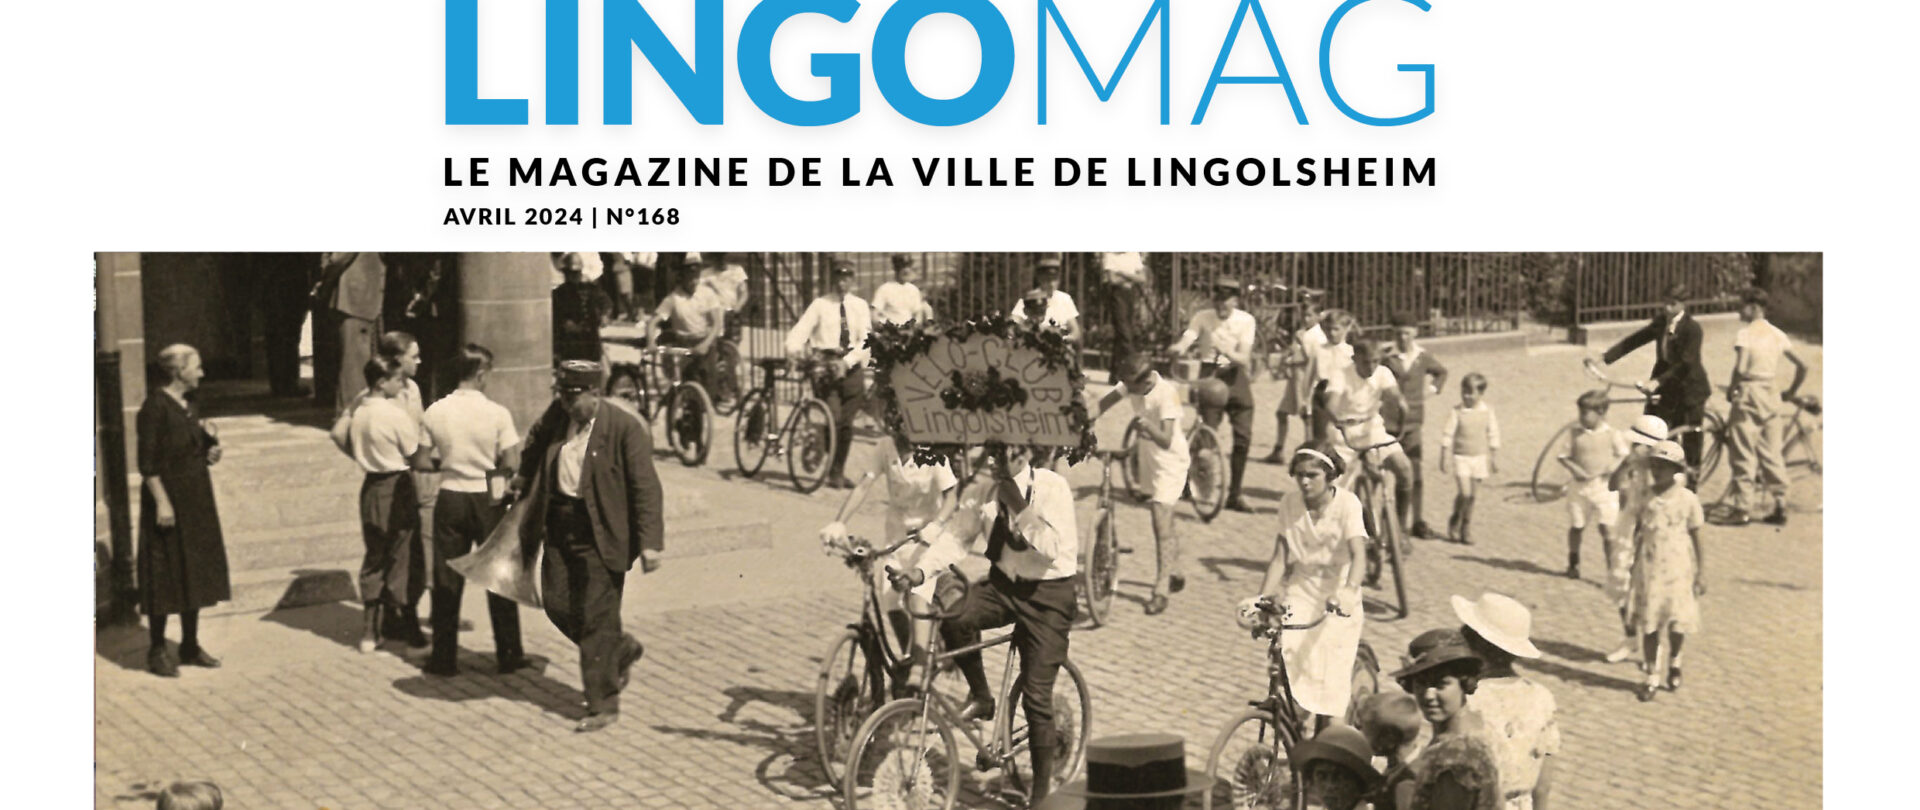 LINGOMAG, édition d'avril à juin